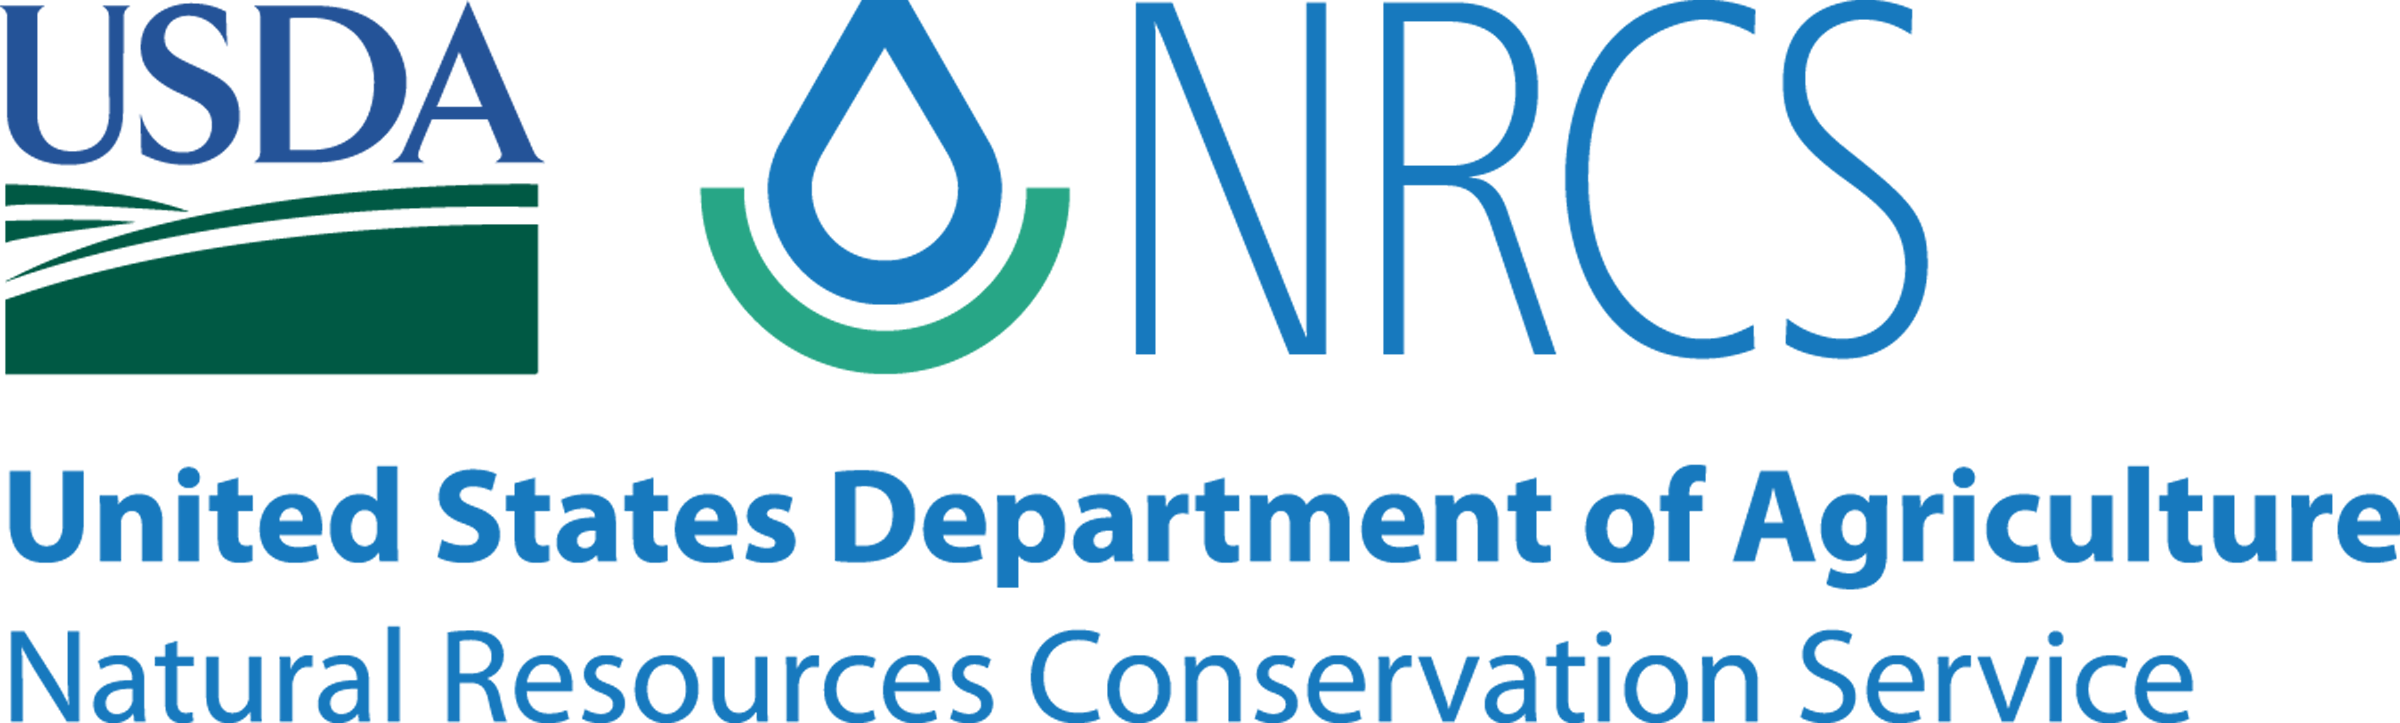 NRCS-logo-transparent